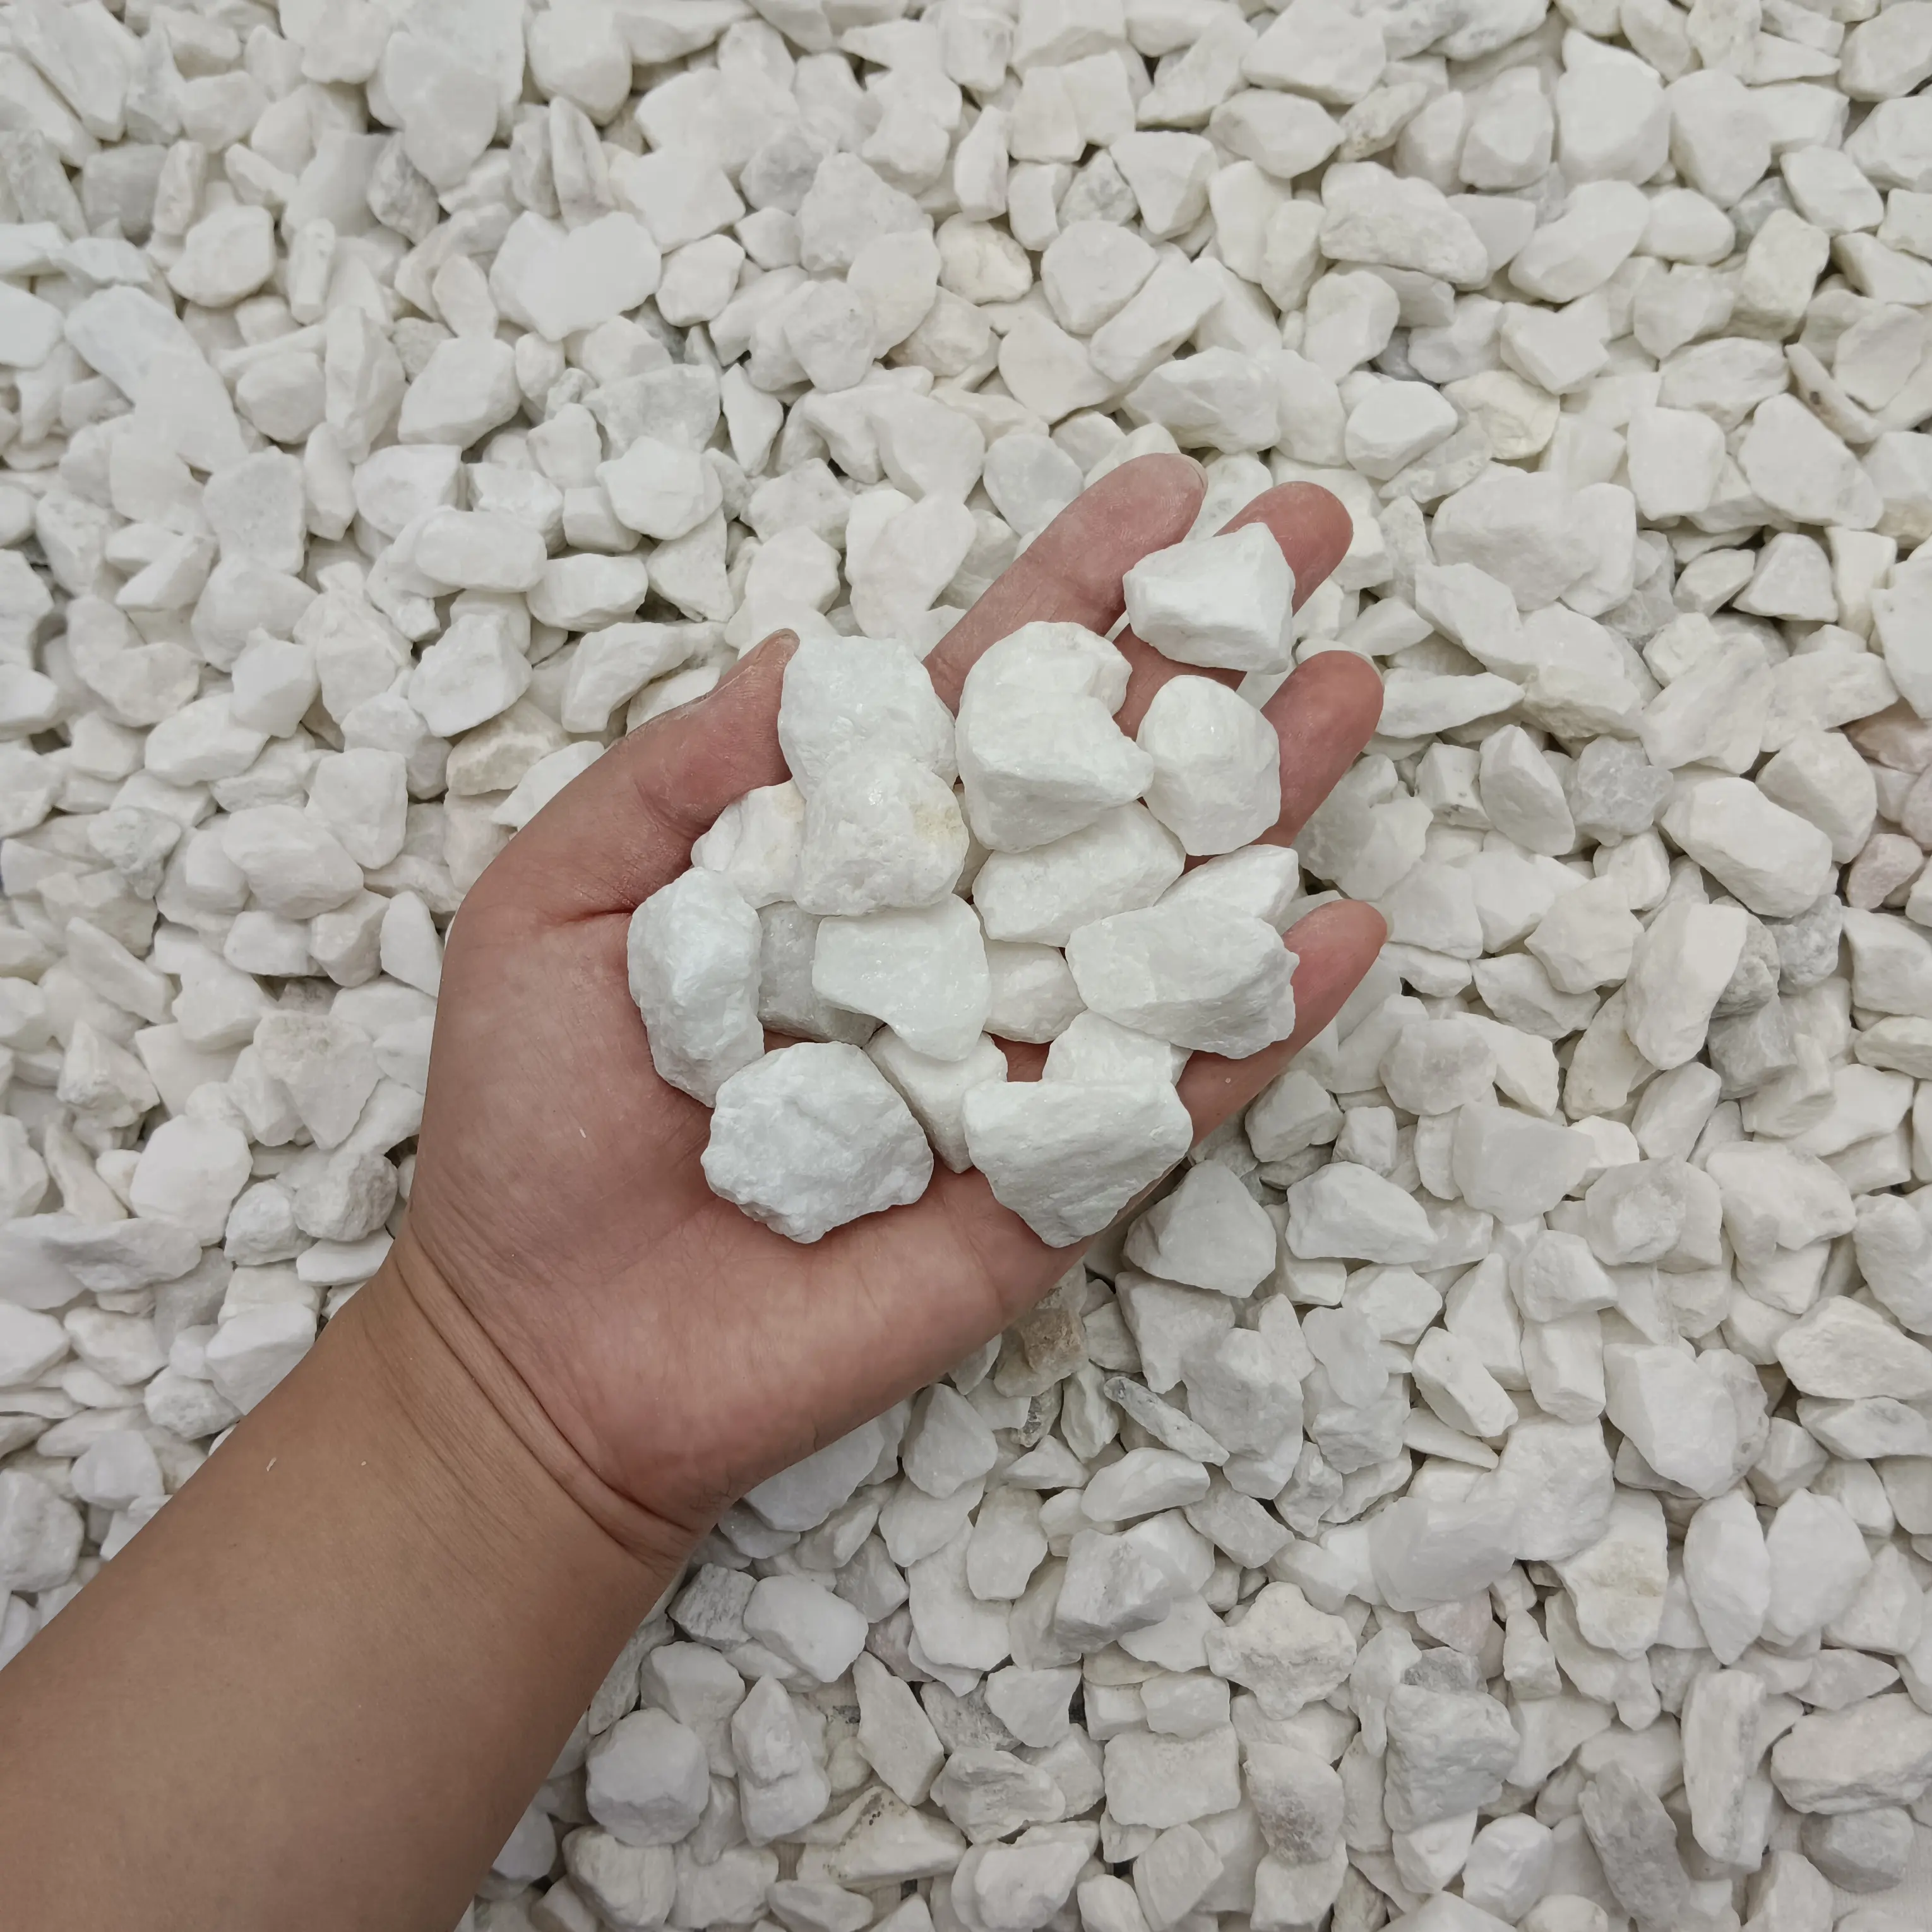 White polyurethane resin binder gravel rubble granulate stone crush for pathways Garden Park Flooring Paving